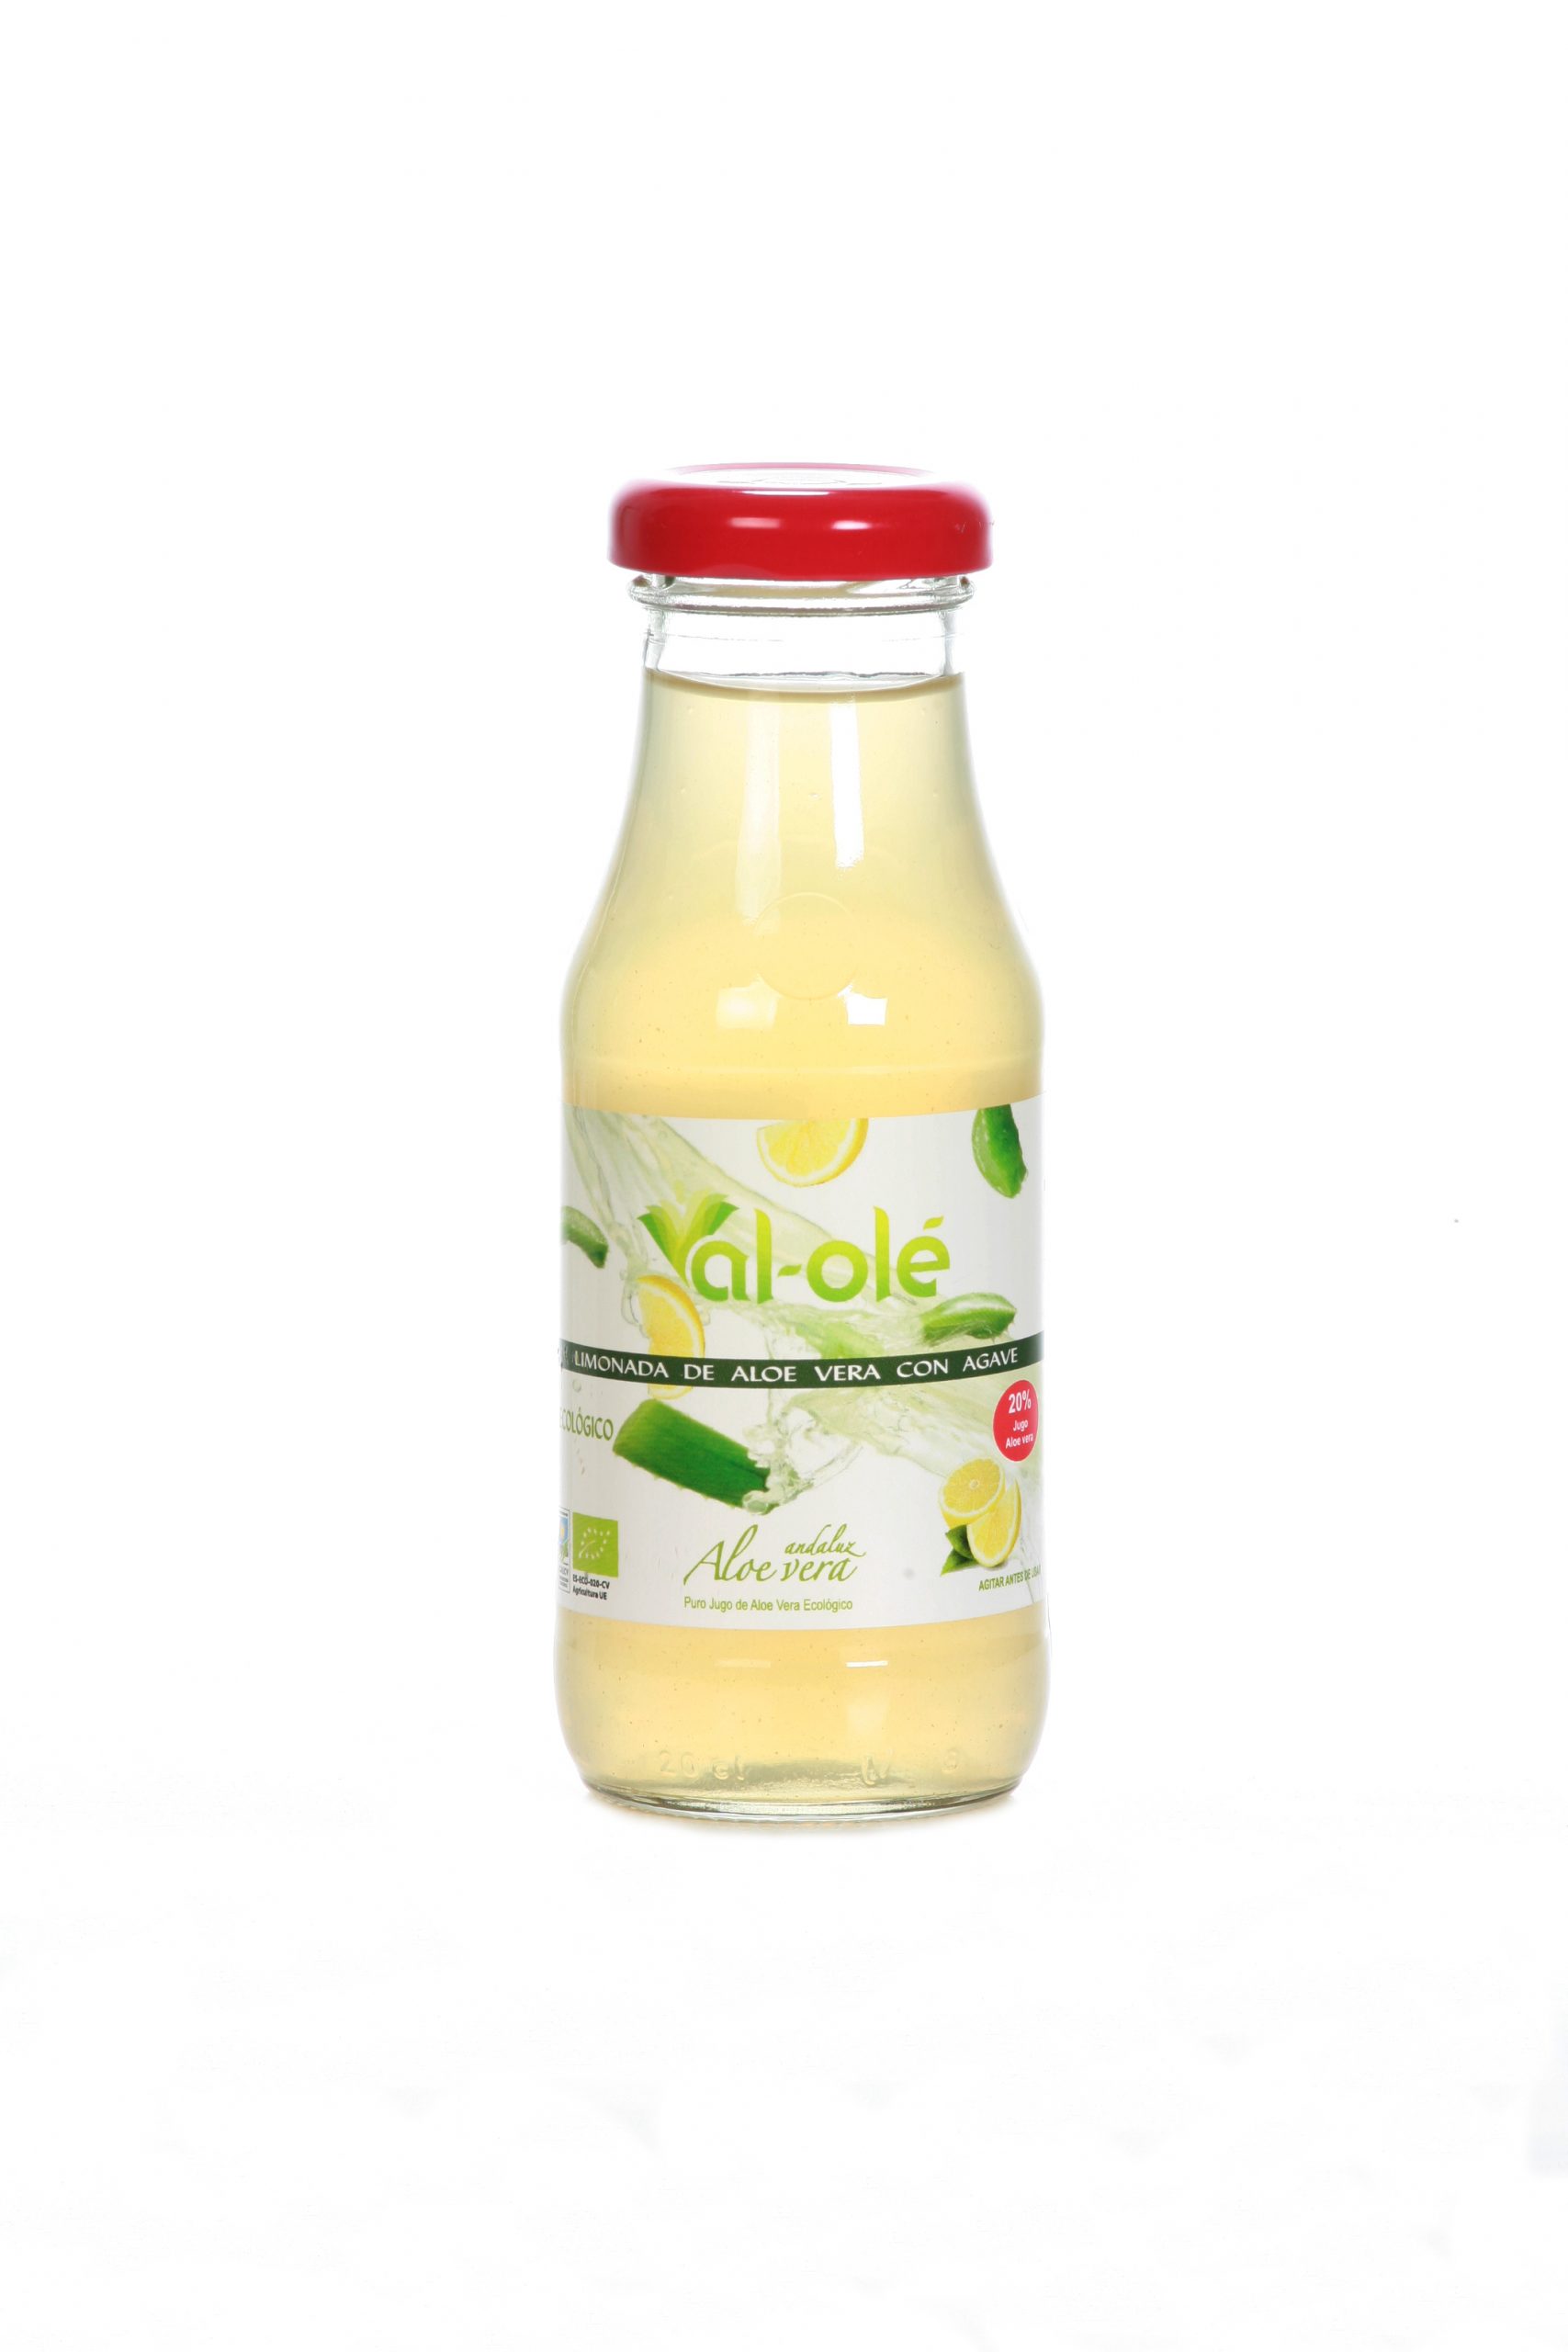 Jugo de aloe vera (96%) miel y limón Ecológico Sin filtrar Para